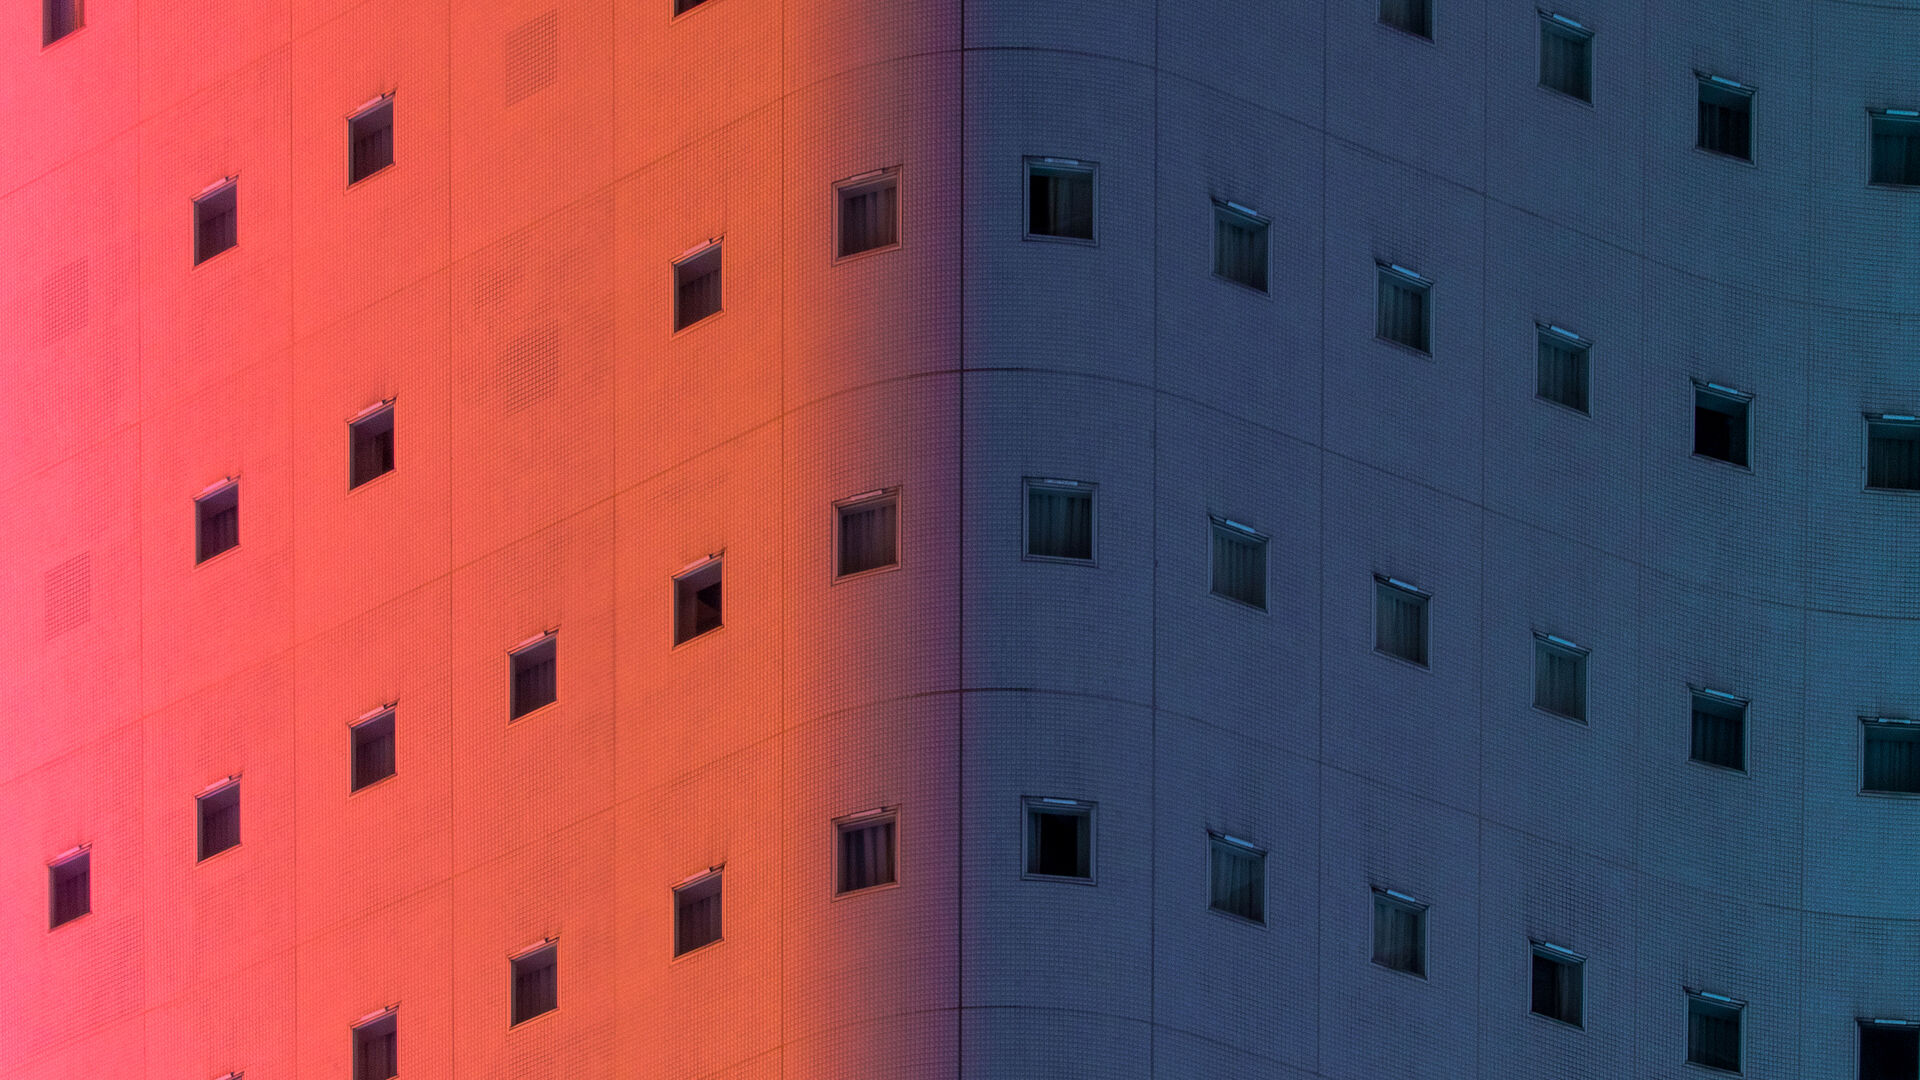 Gebäude angestrahlt in Farben